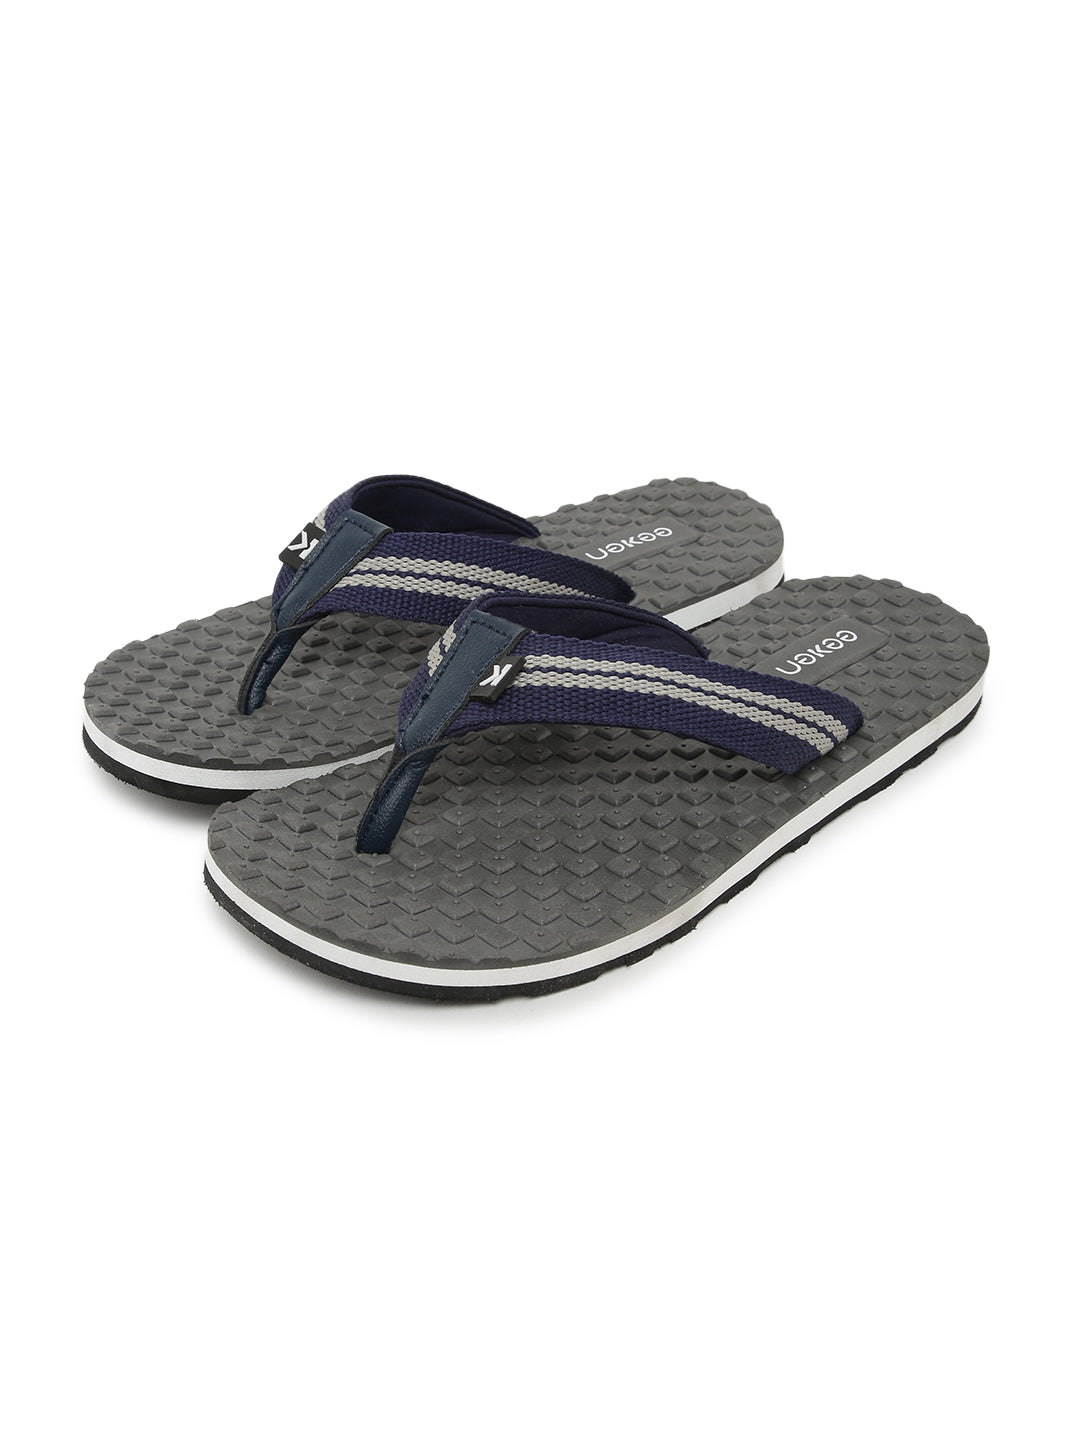 Eeken EFBG3024 Grey Ultra-Comfortable Flip Flops For Men